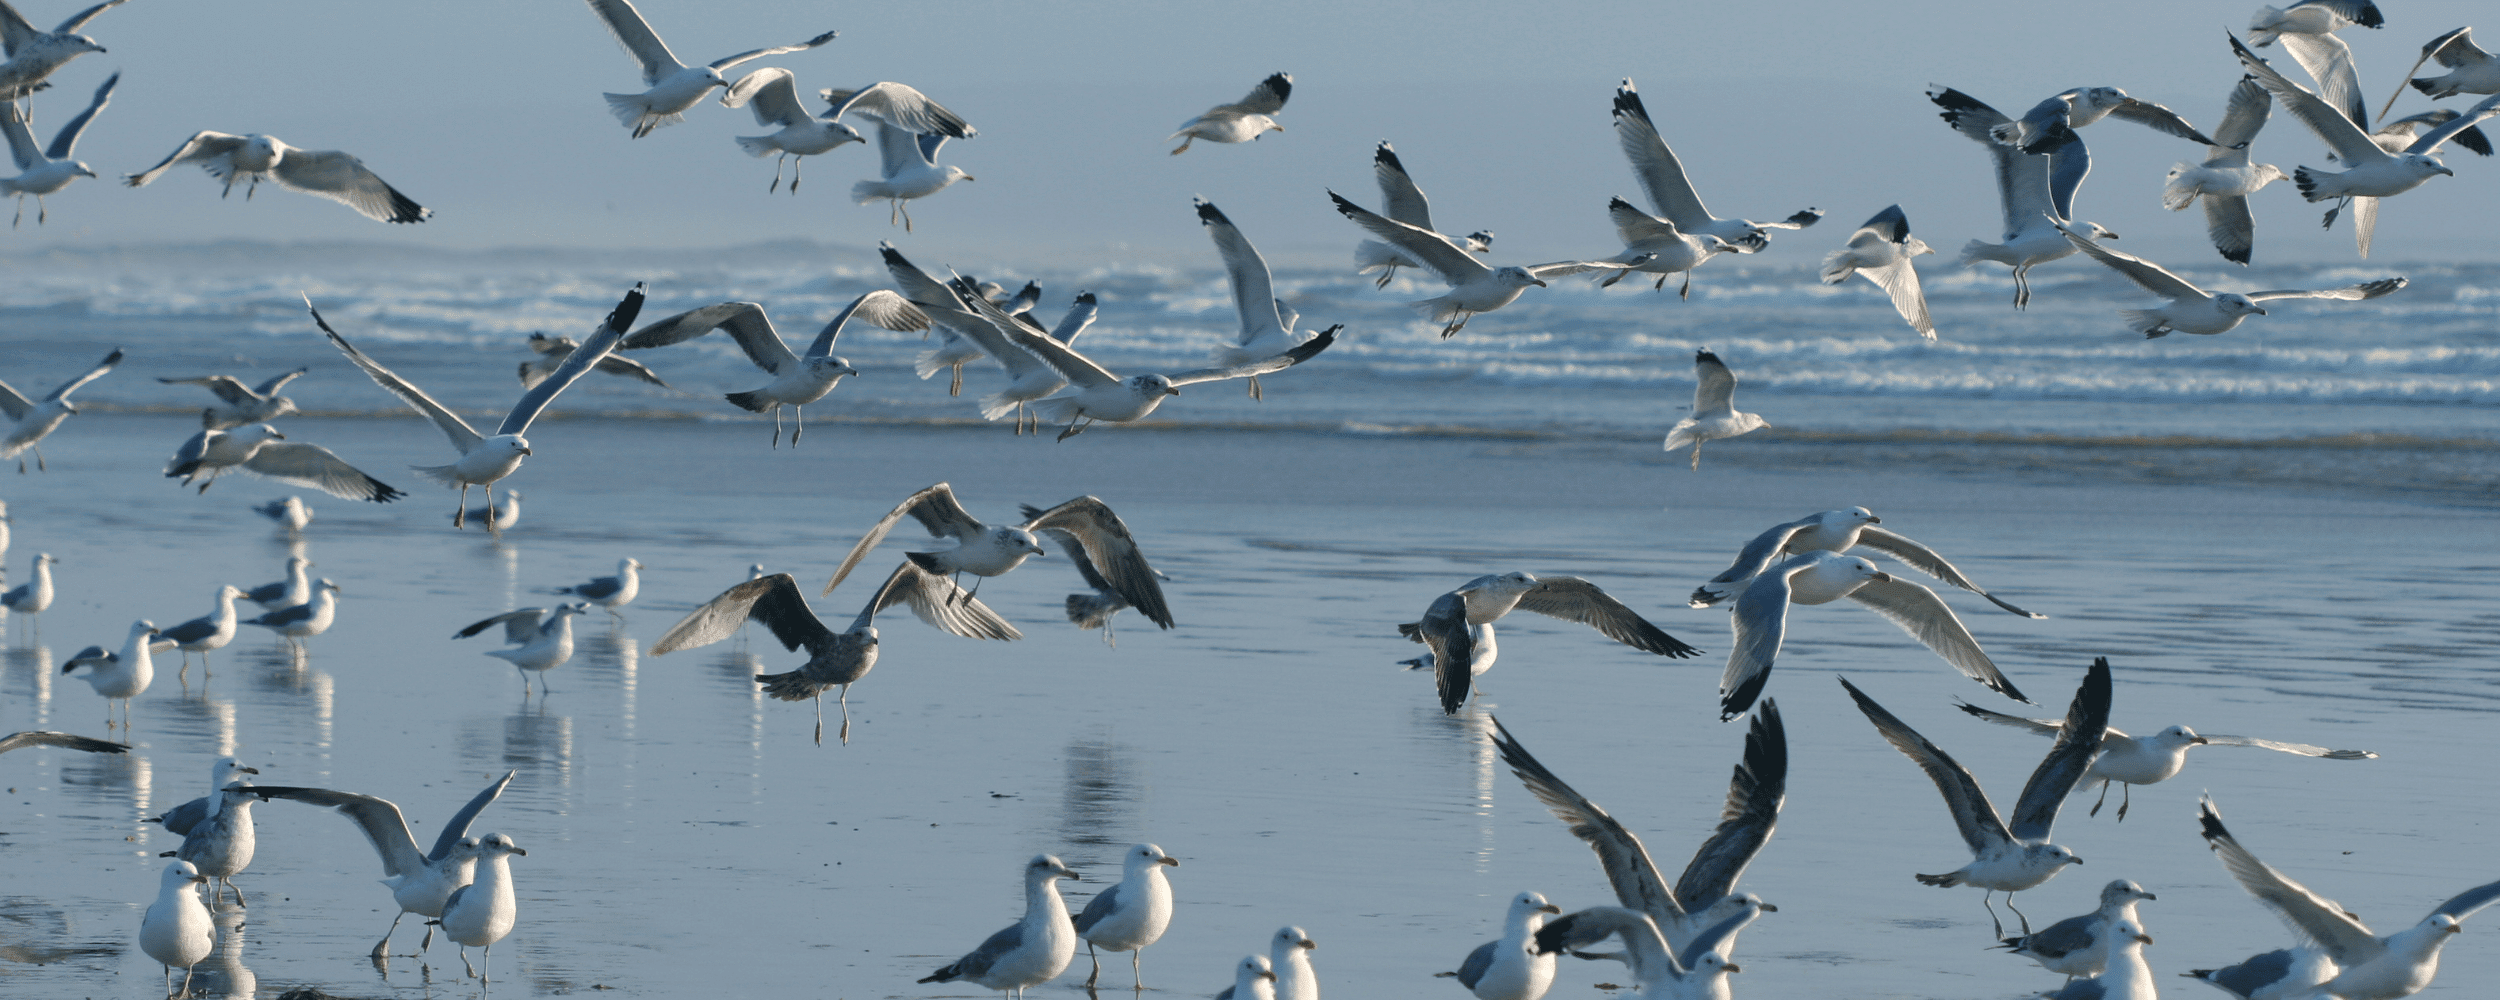 seabirds at the beach